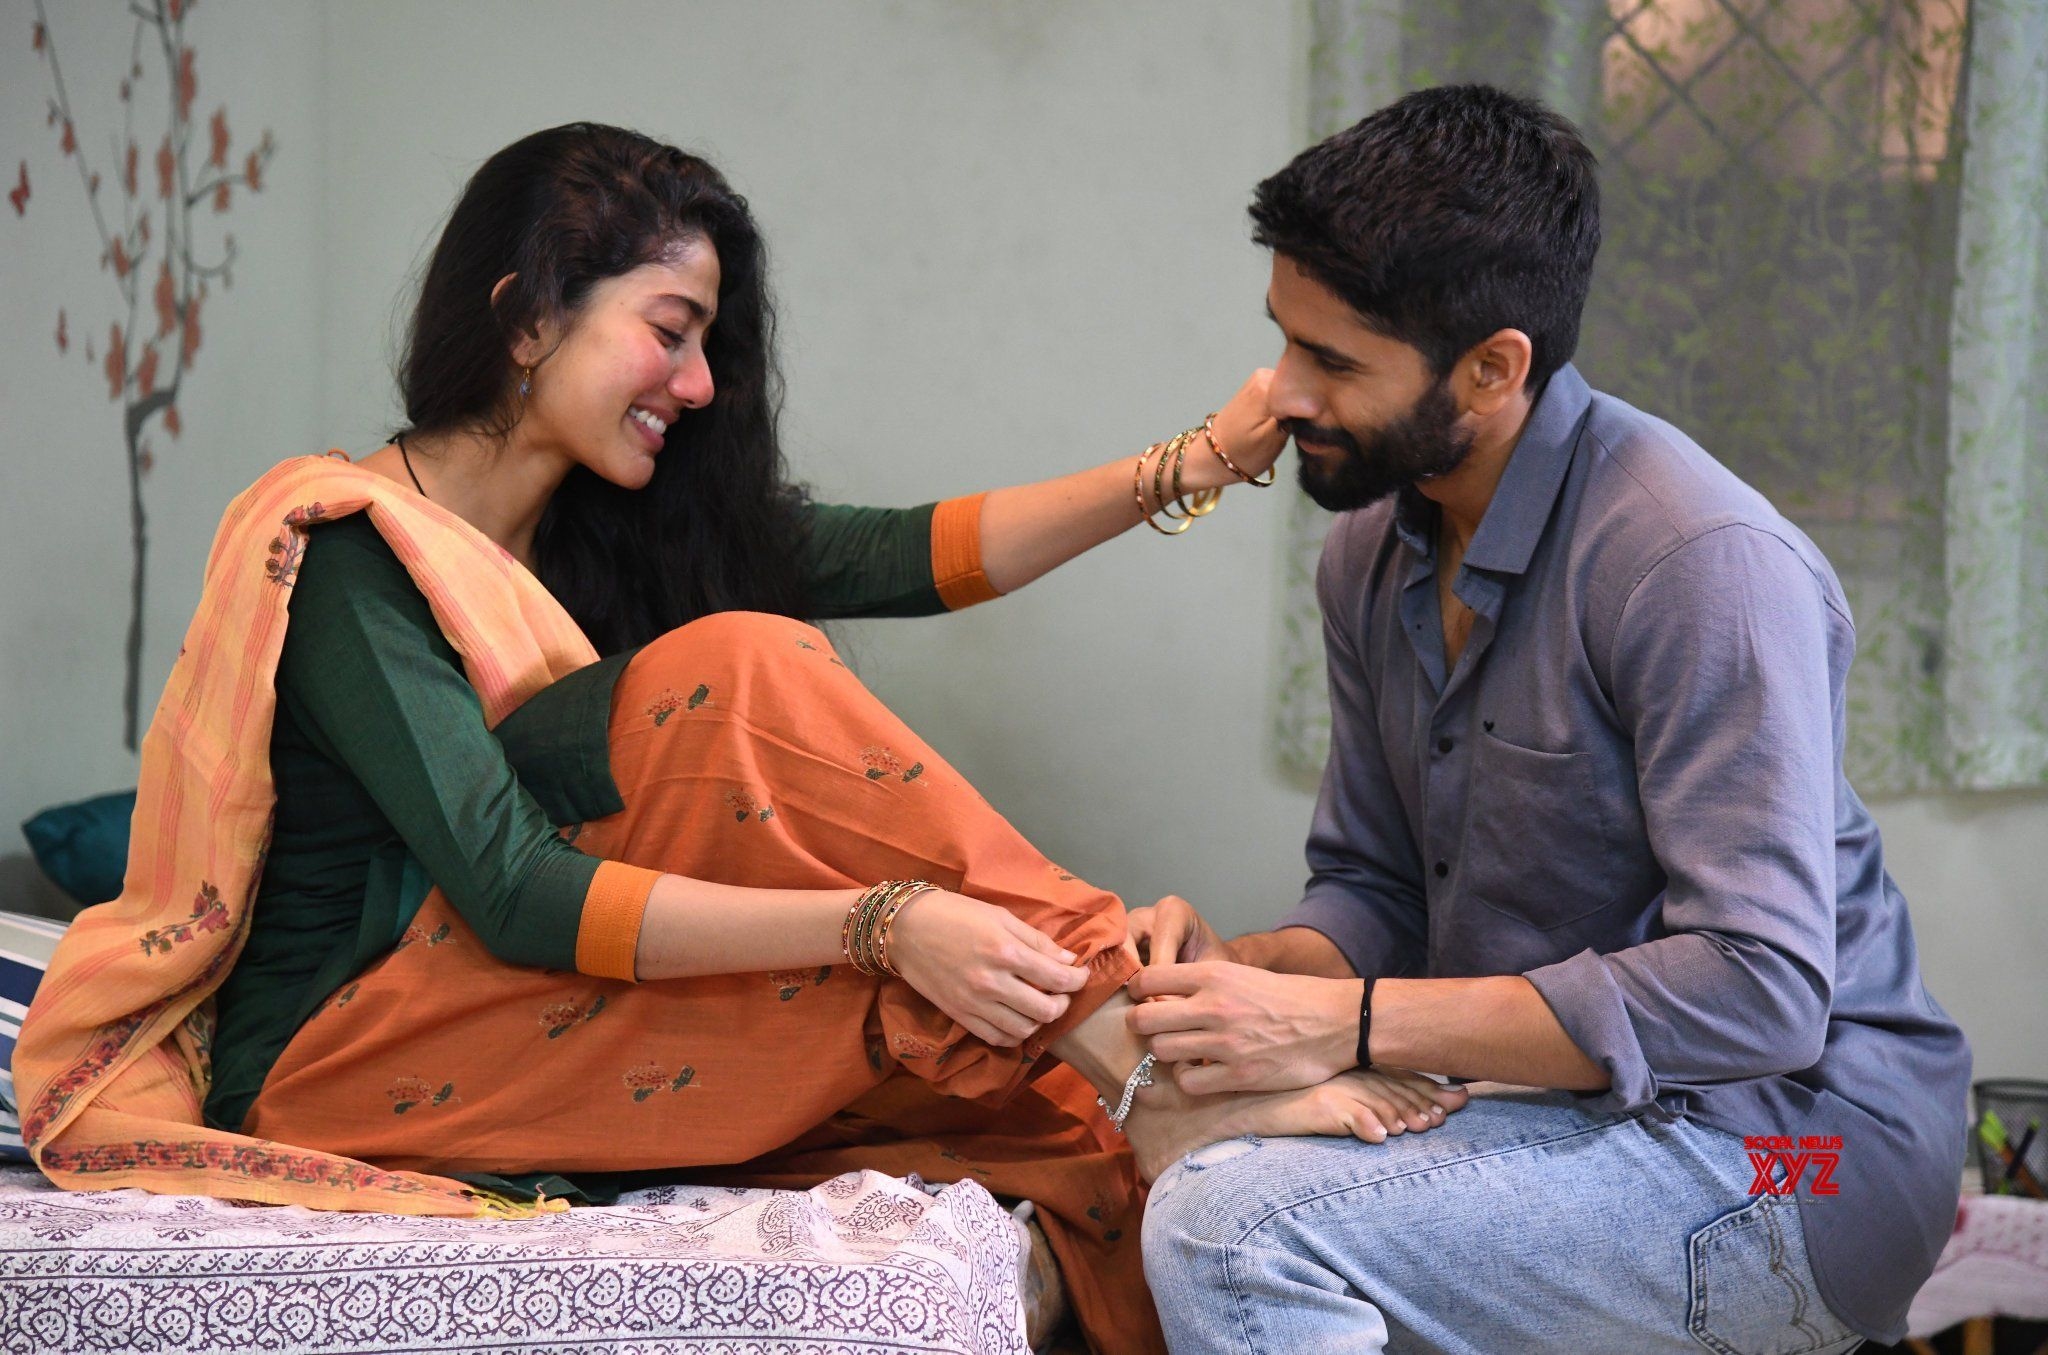 NagaChaitanya and SaiPallavi LuV Images From Upcoming Movie Love Story